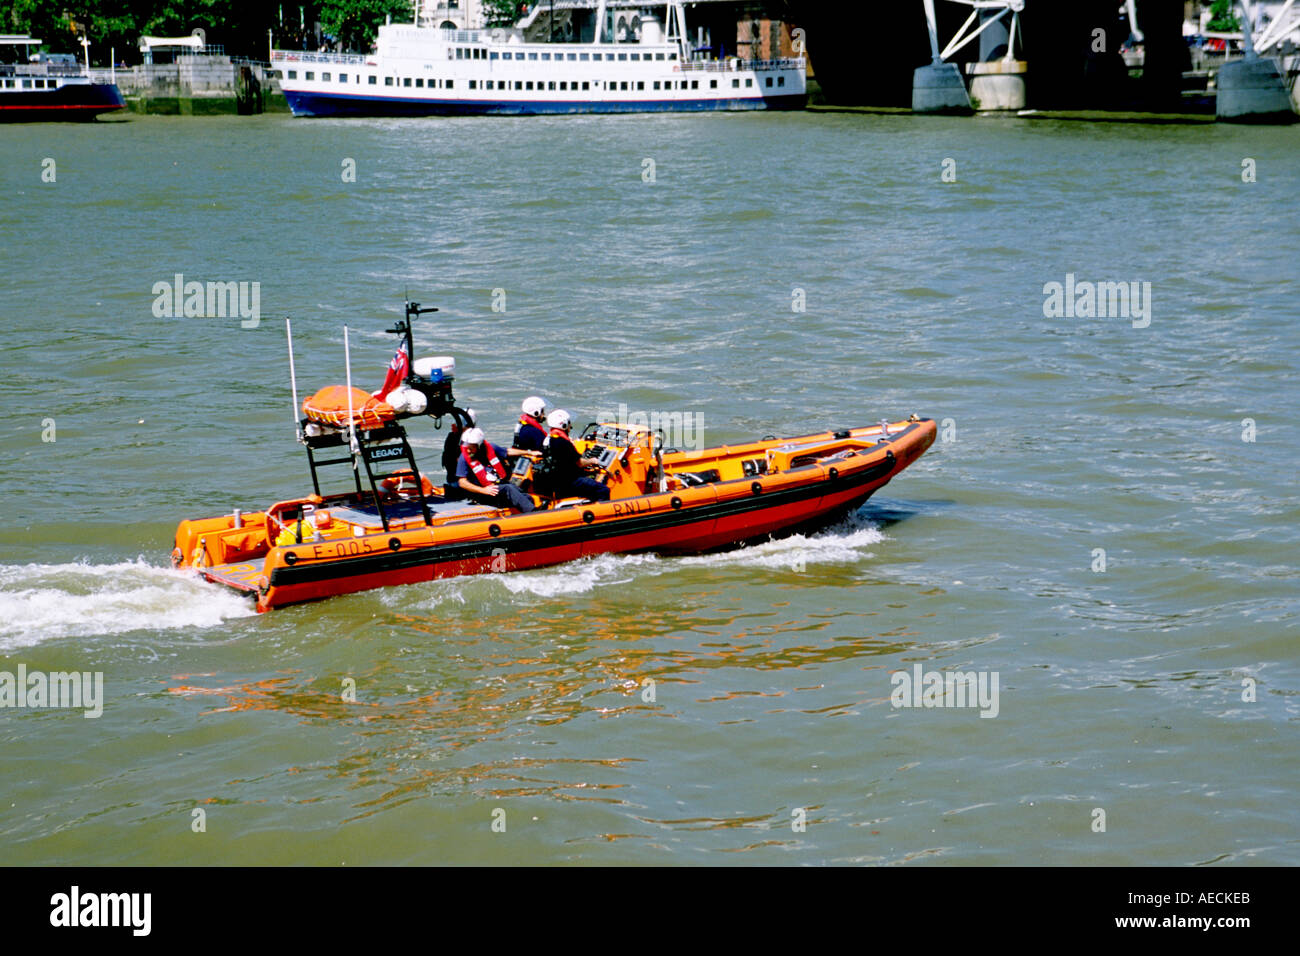 Un lancement de sauvetage de la RNLI en patrouille sur la rivière Thames à London. Banque D'Images